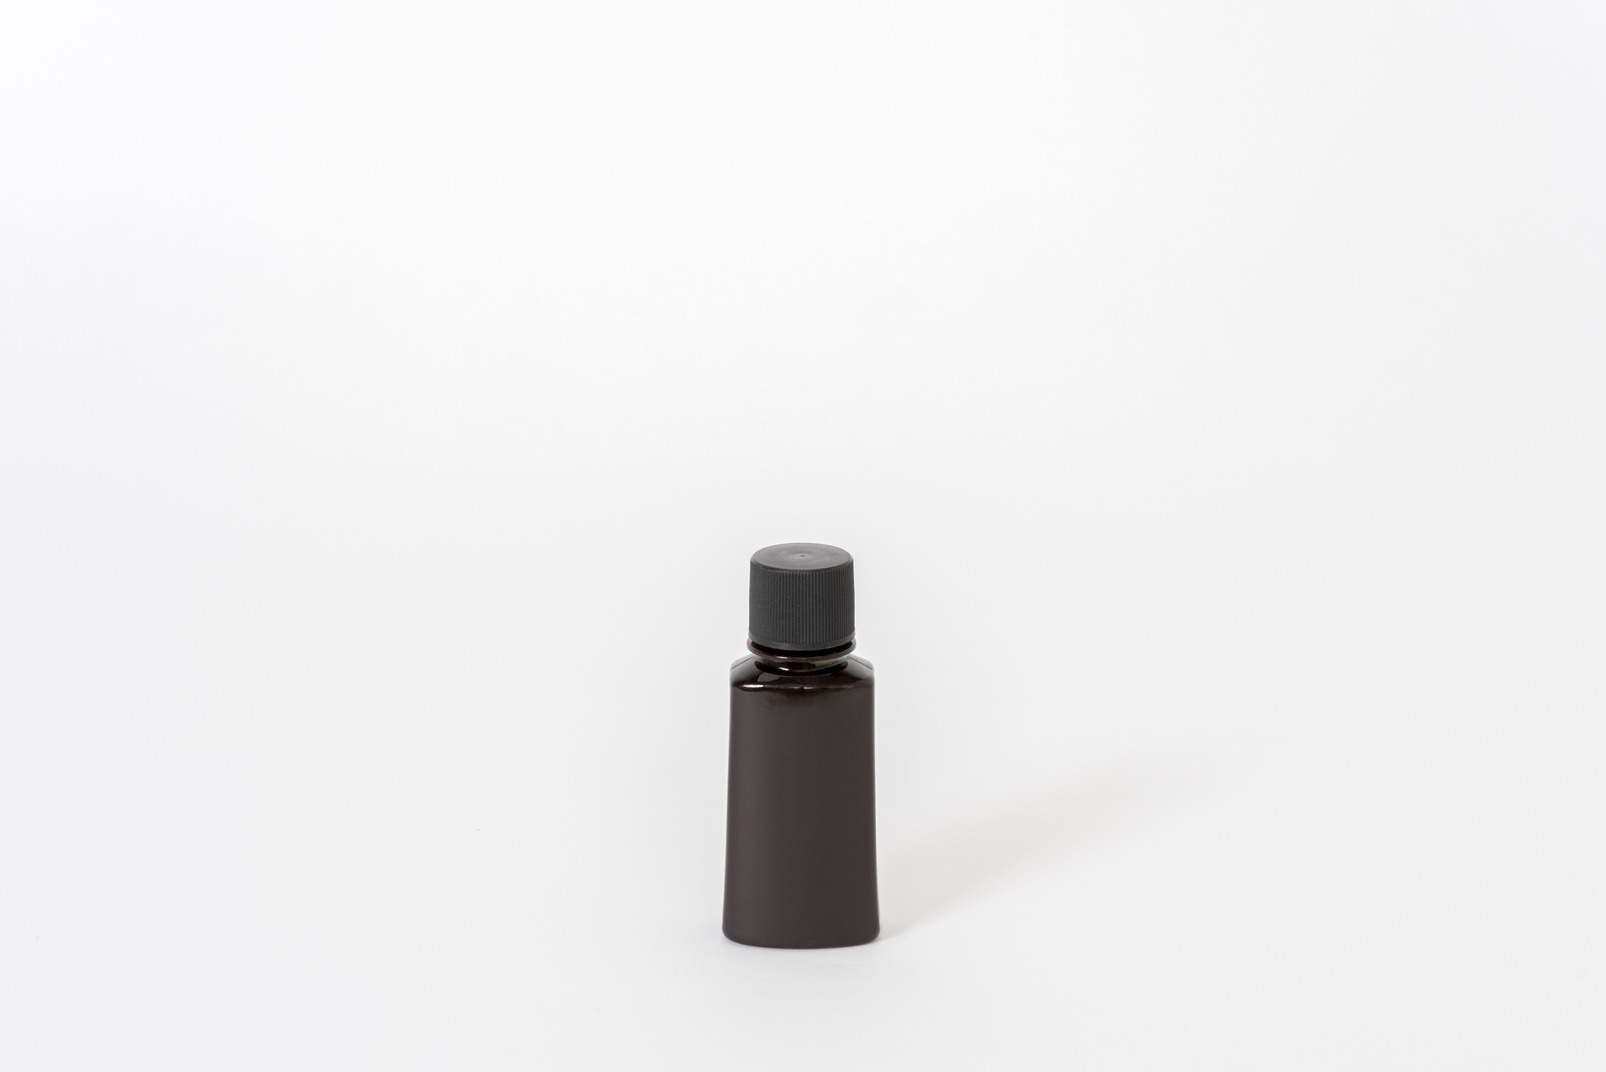 Black perfume bottle on white background